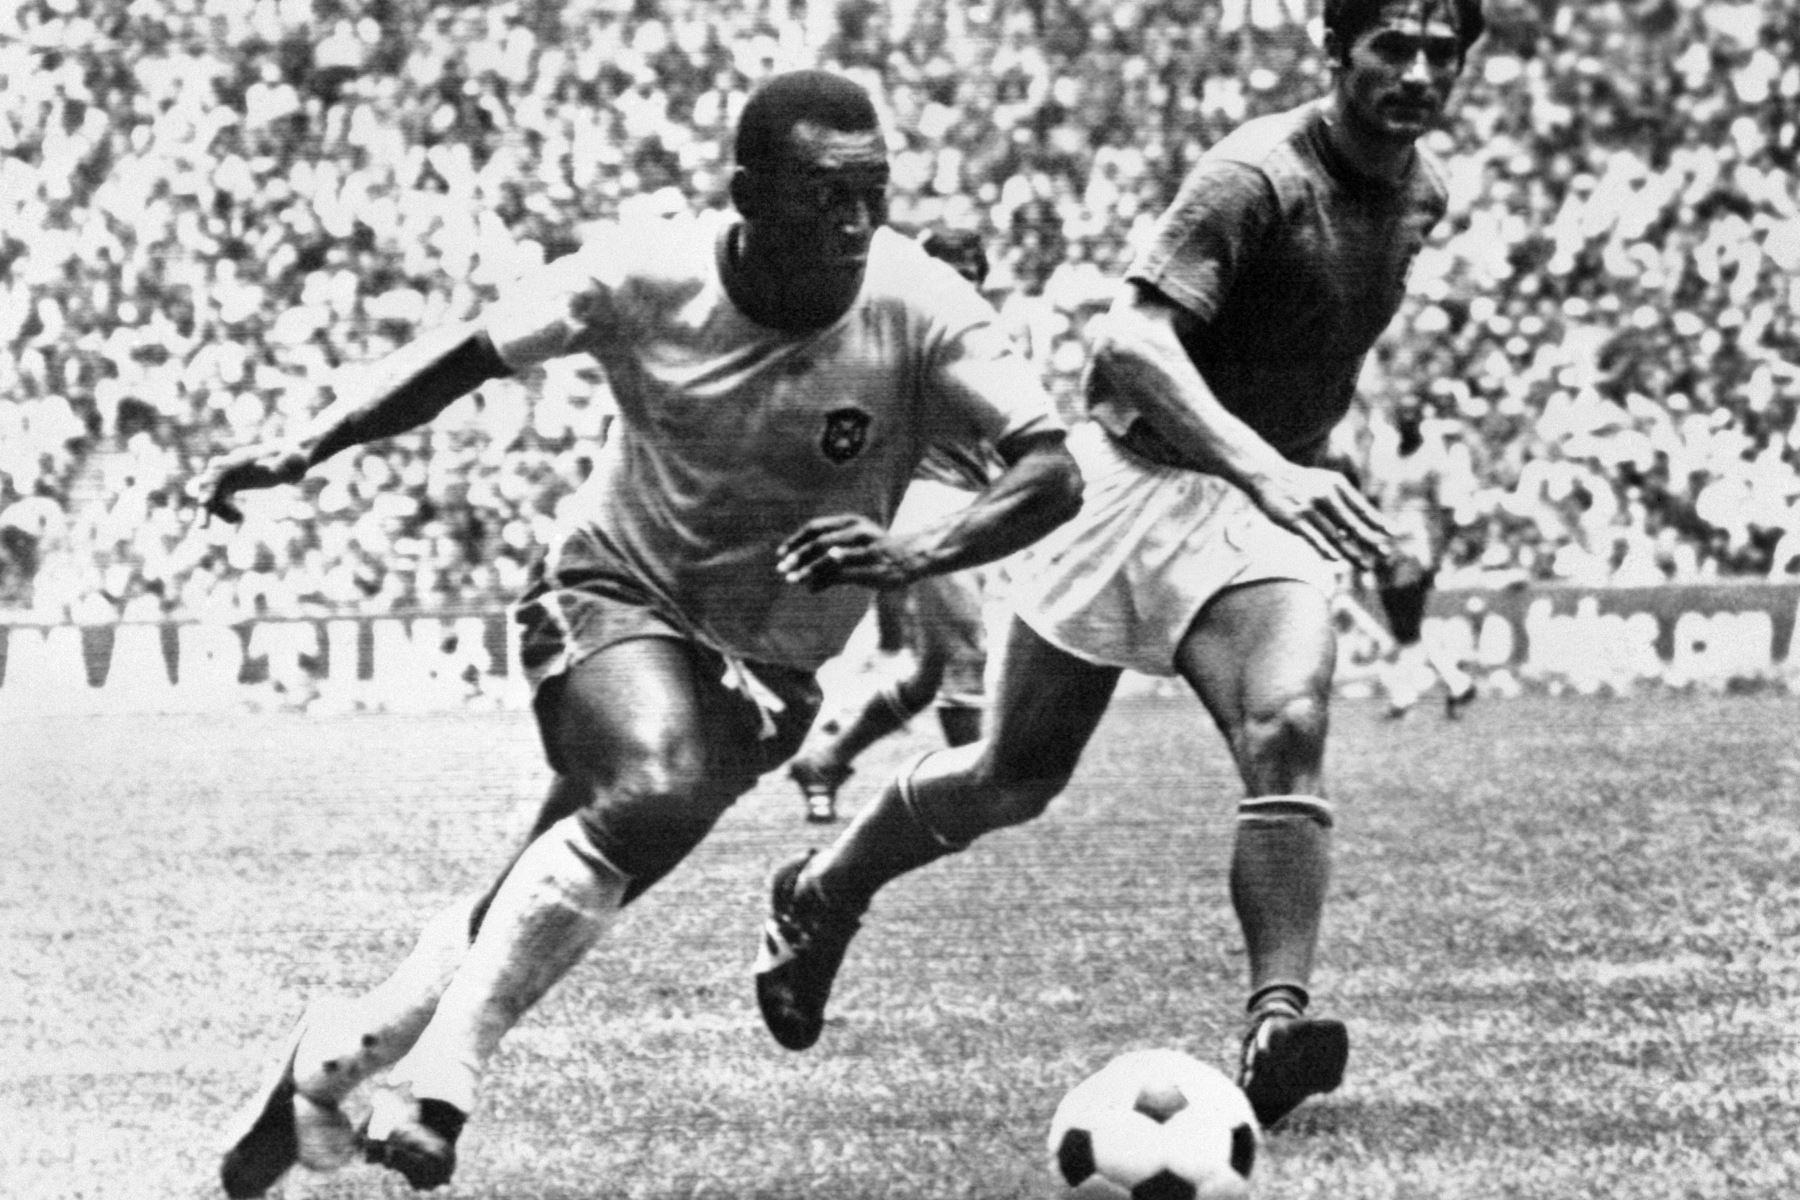 El centrocampista brasileño Pelé regatea al defensor italiano Tarcisio Burgnich durante la final de la Copa del Mundo el 21 de junio de 1970 en México. Pelé anotó el primer gol de su equipo cuando Brasil venció a Italia 4-1 para capturar su tercer título mundial después de 1958 (en Suecia) y 1962 (en Chile). Foto: AFP